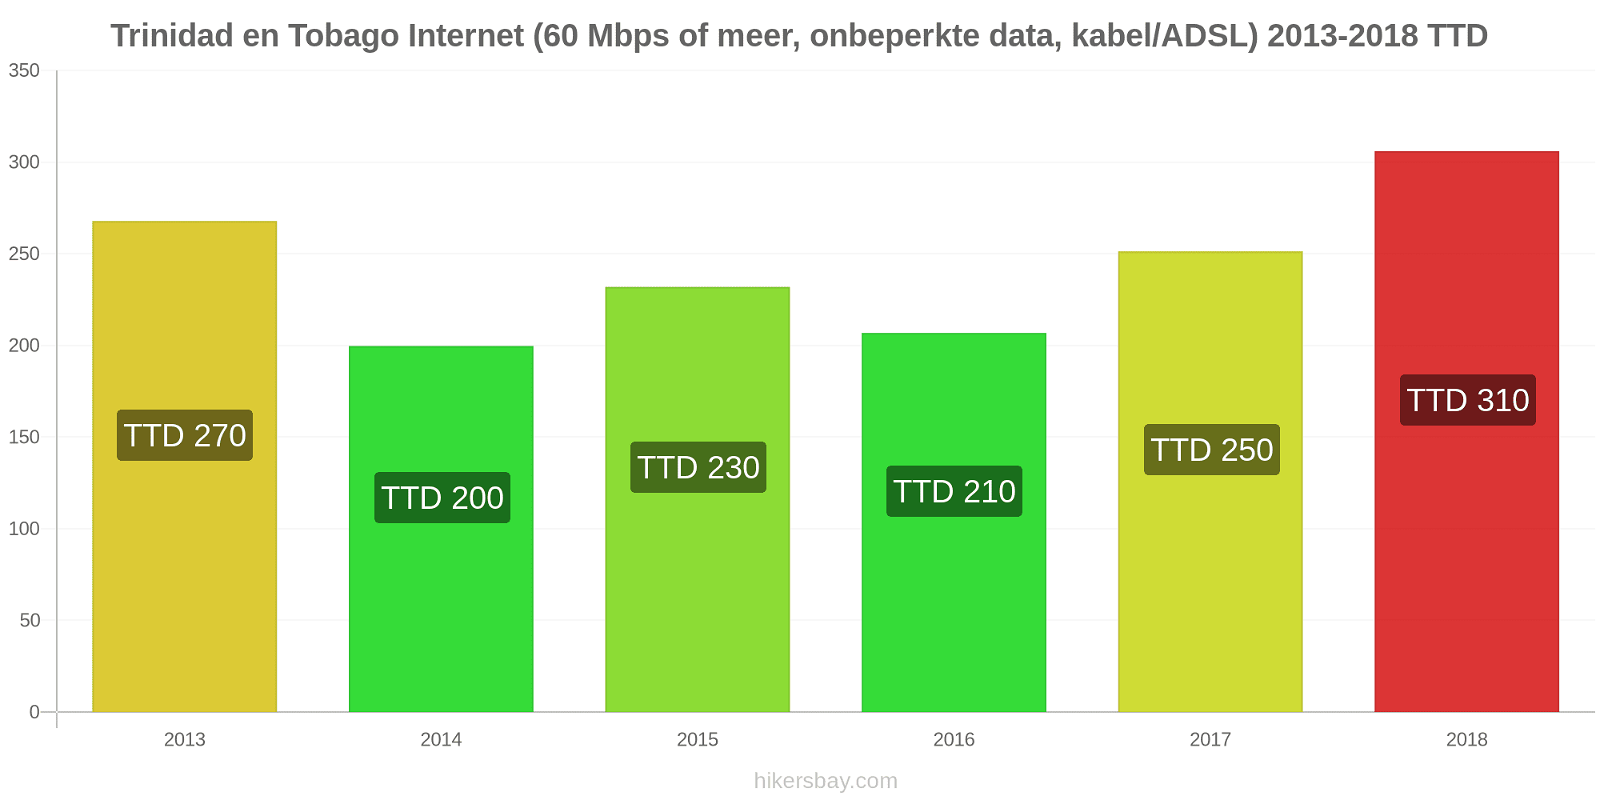 Trinidad en Tobago prijswijzigingen Internet (60 Mbps of meer, Onbeperkte Data, Kabel/ADSL) hikersbay.com